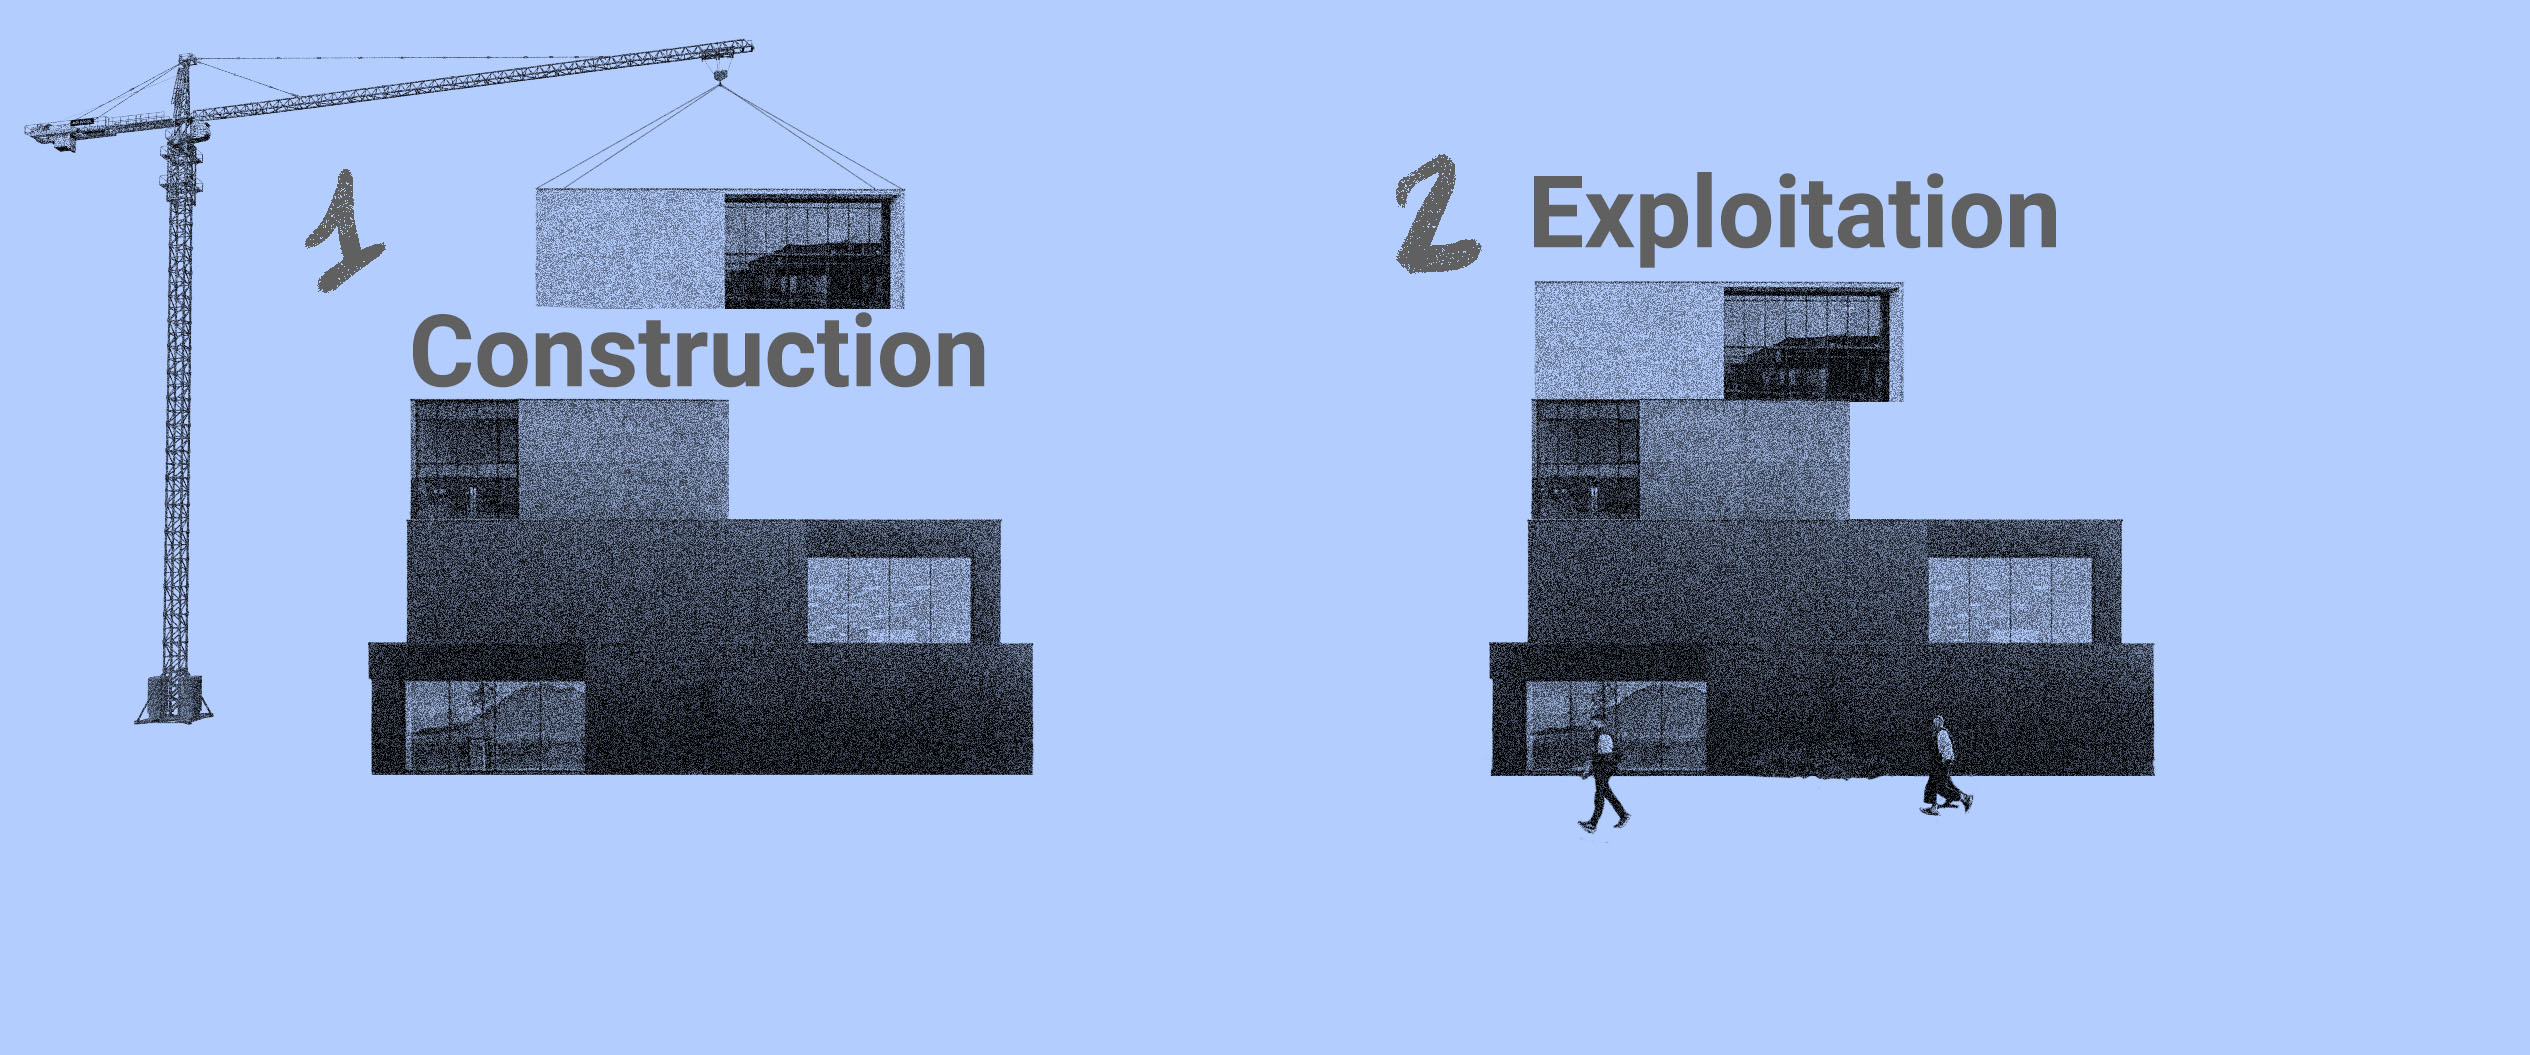 cycle de vie d'un bâtiment avec la construction et l'exploitation de celui-ci